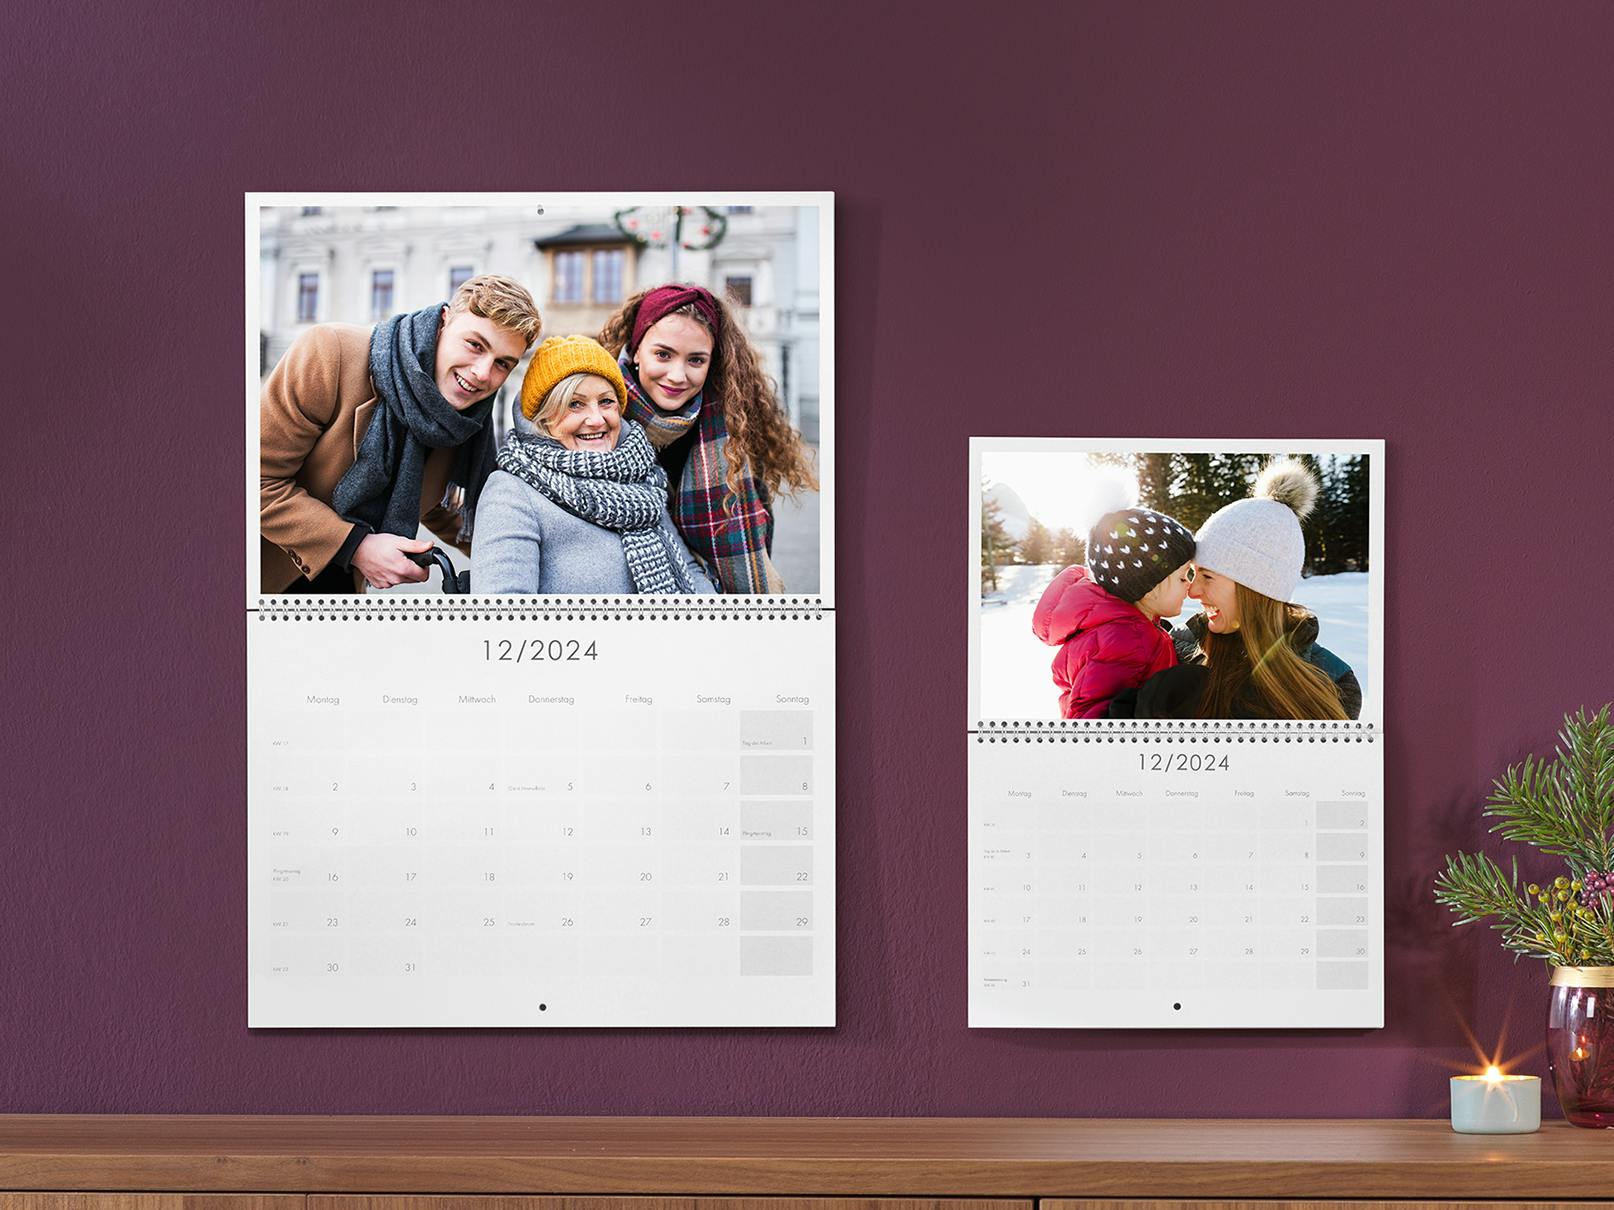 Calendarios personalizados 2023 plegables con fotos familiares invernales